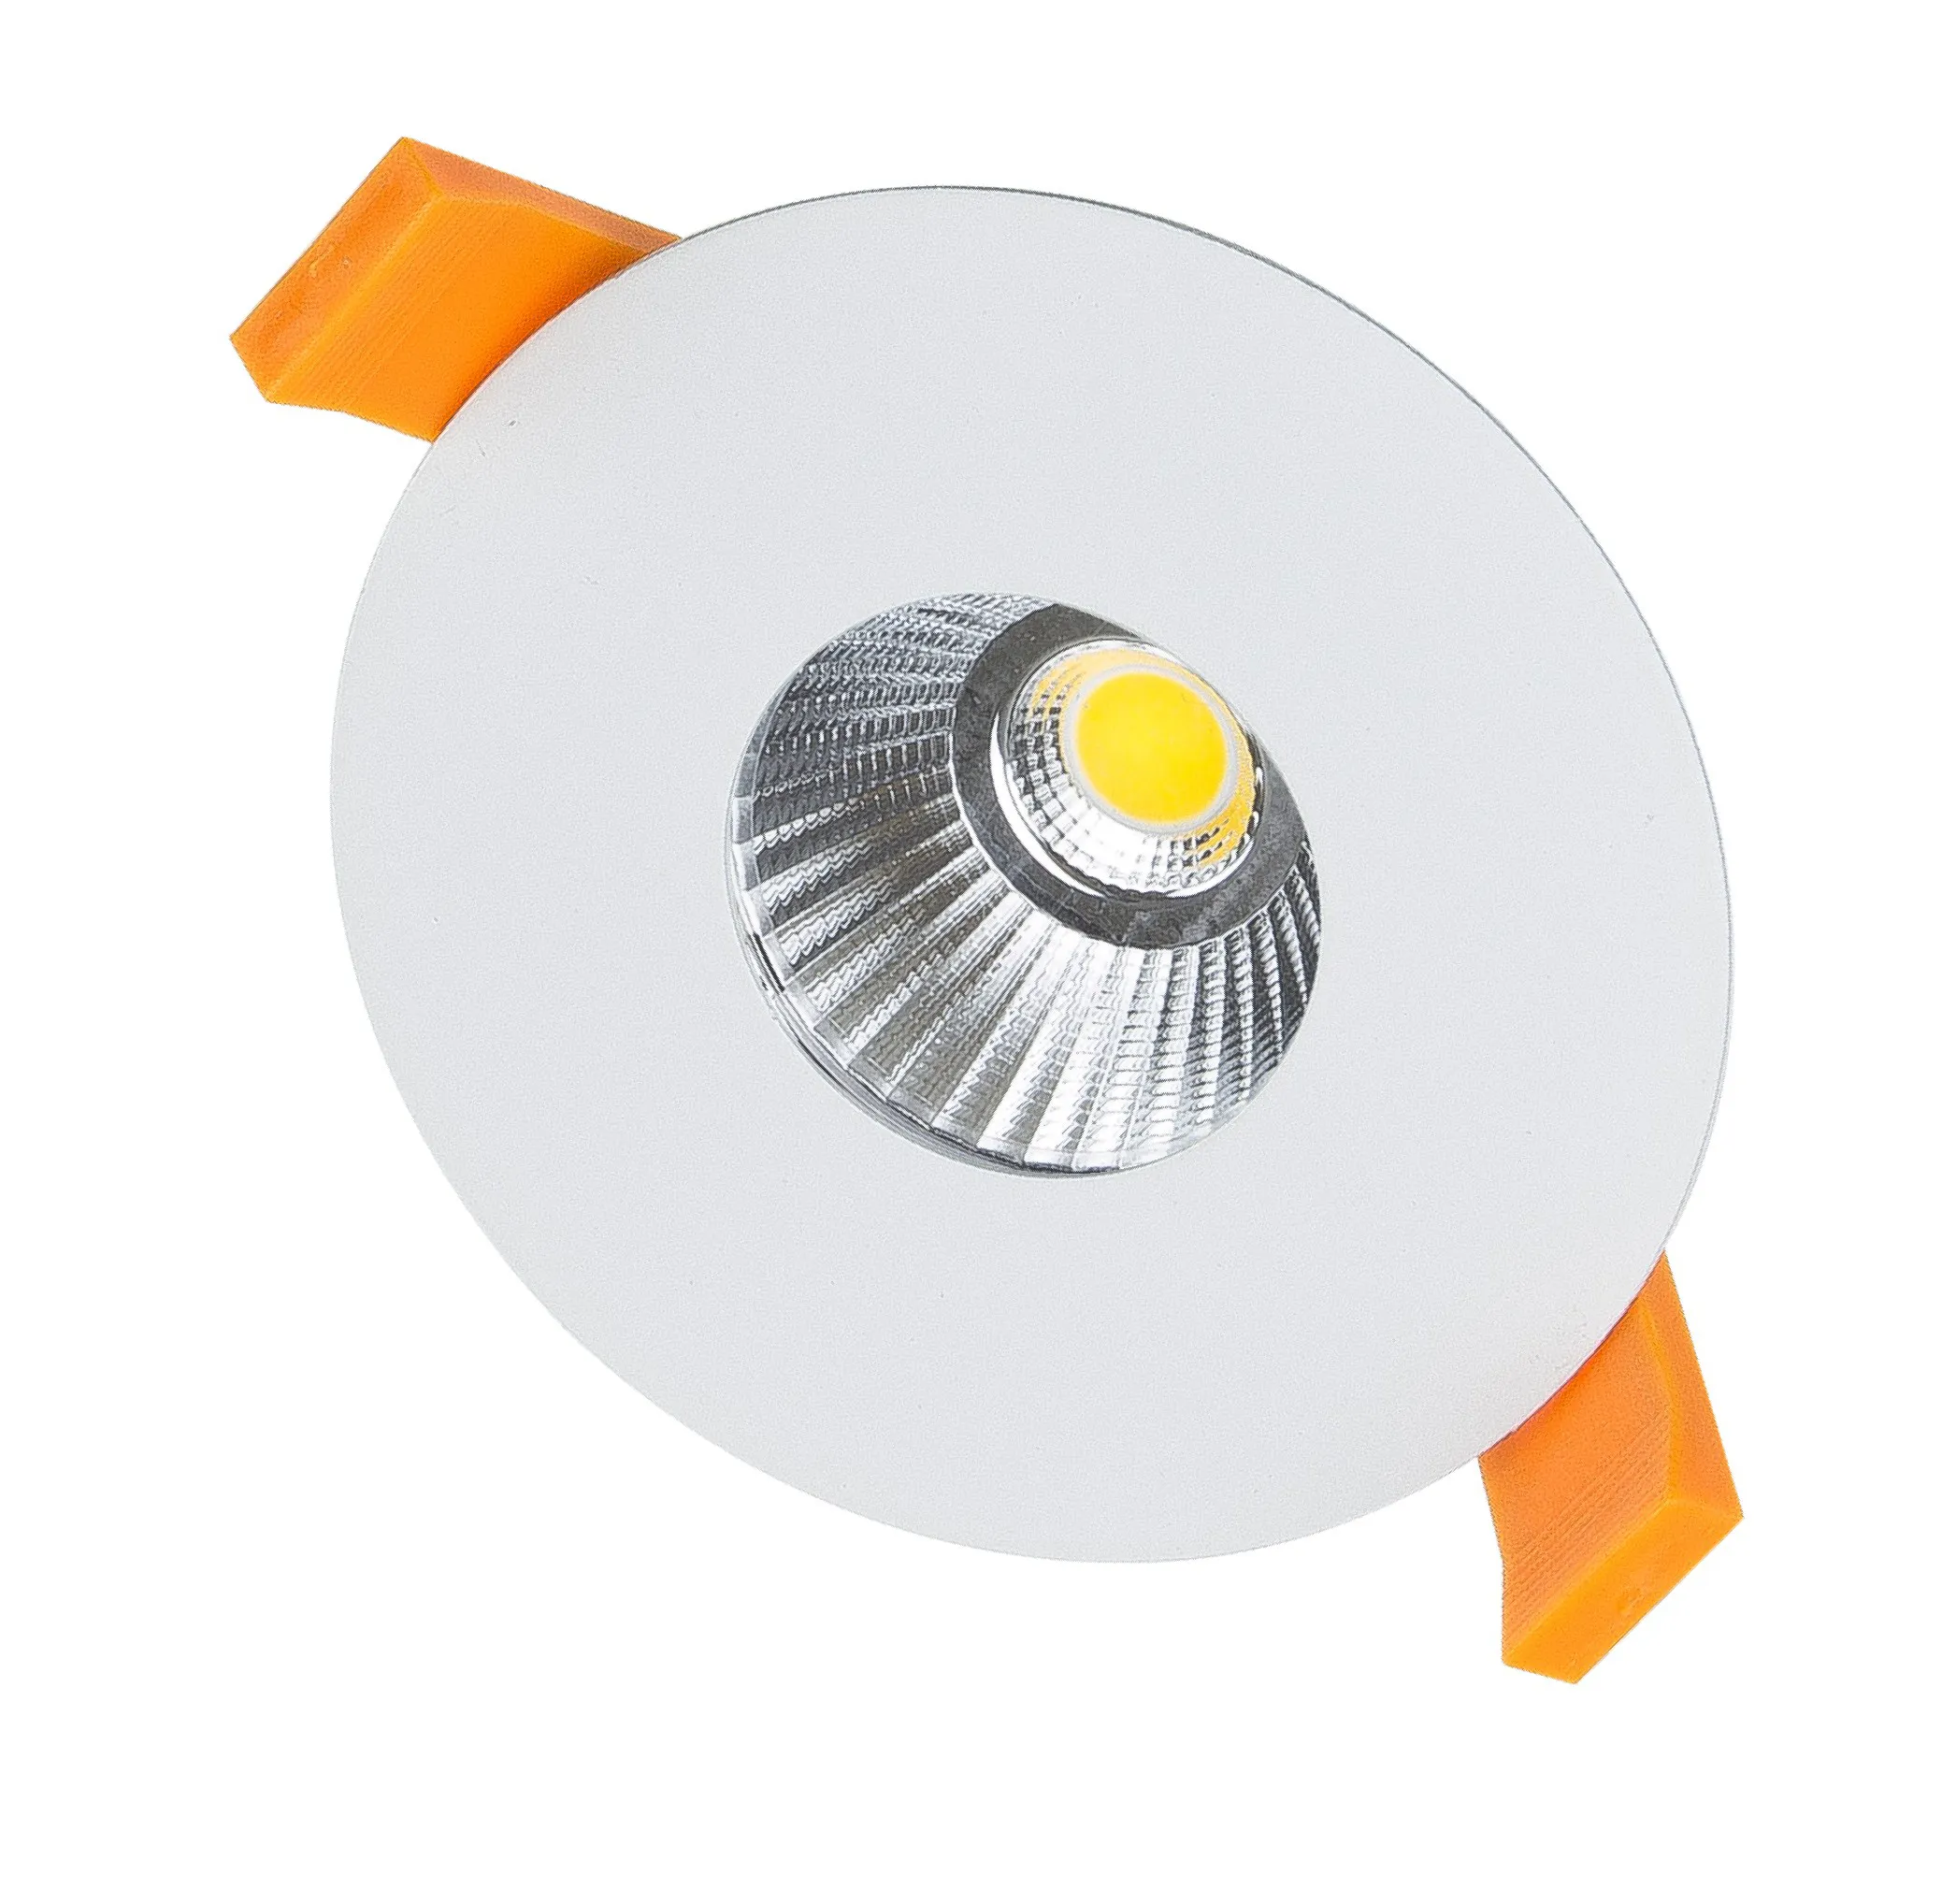 MR16 GU10 LED Módulo de luz G53 suporte de lâmpada LED com mola COB smd LED downlight 9W EvoliteLL com corpo de lâmpada de alumínio X2A + RF4